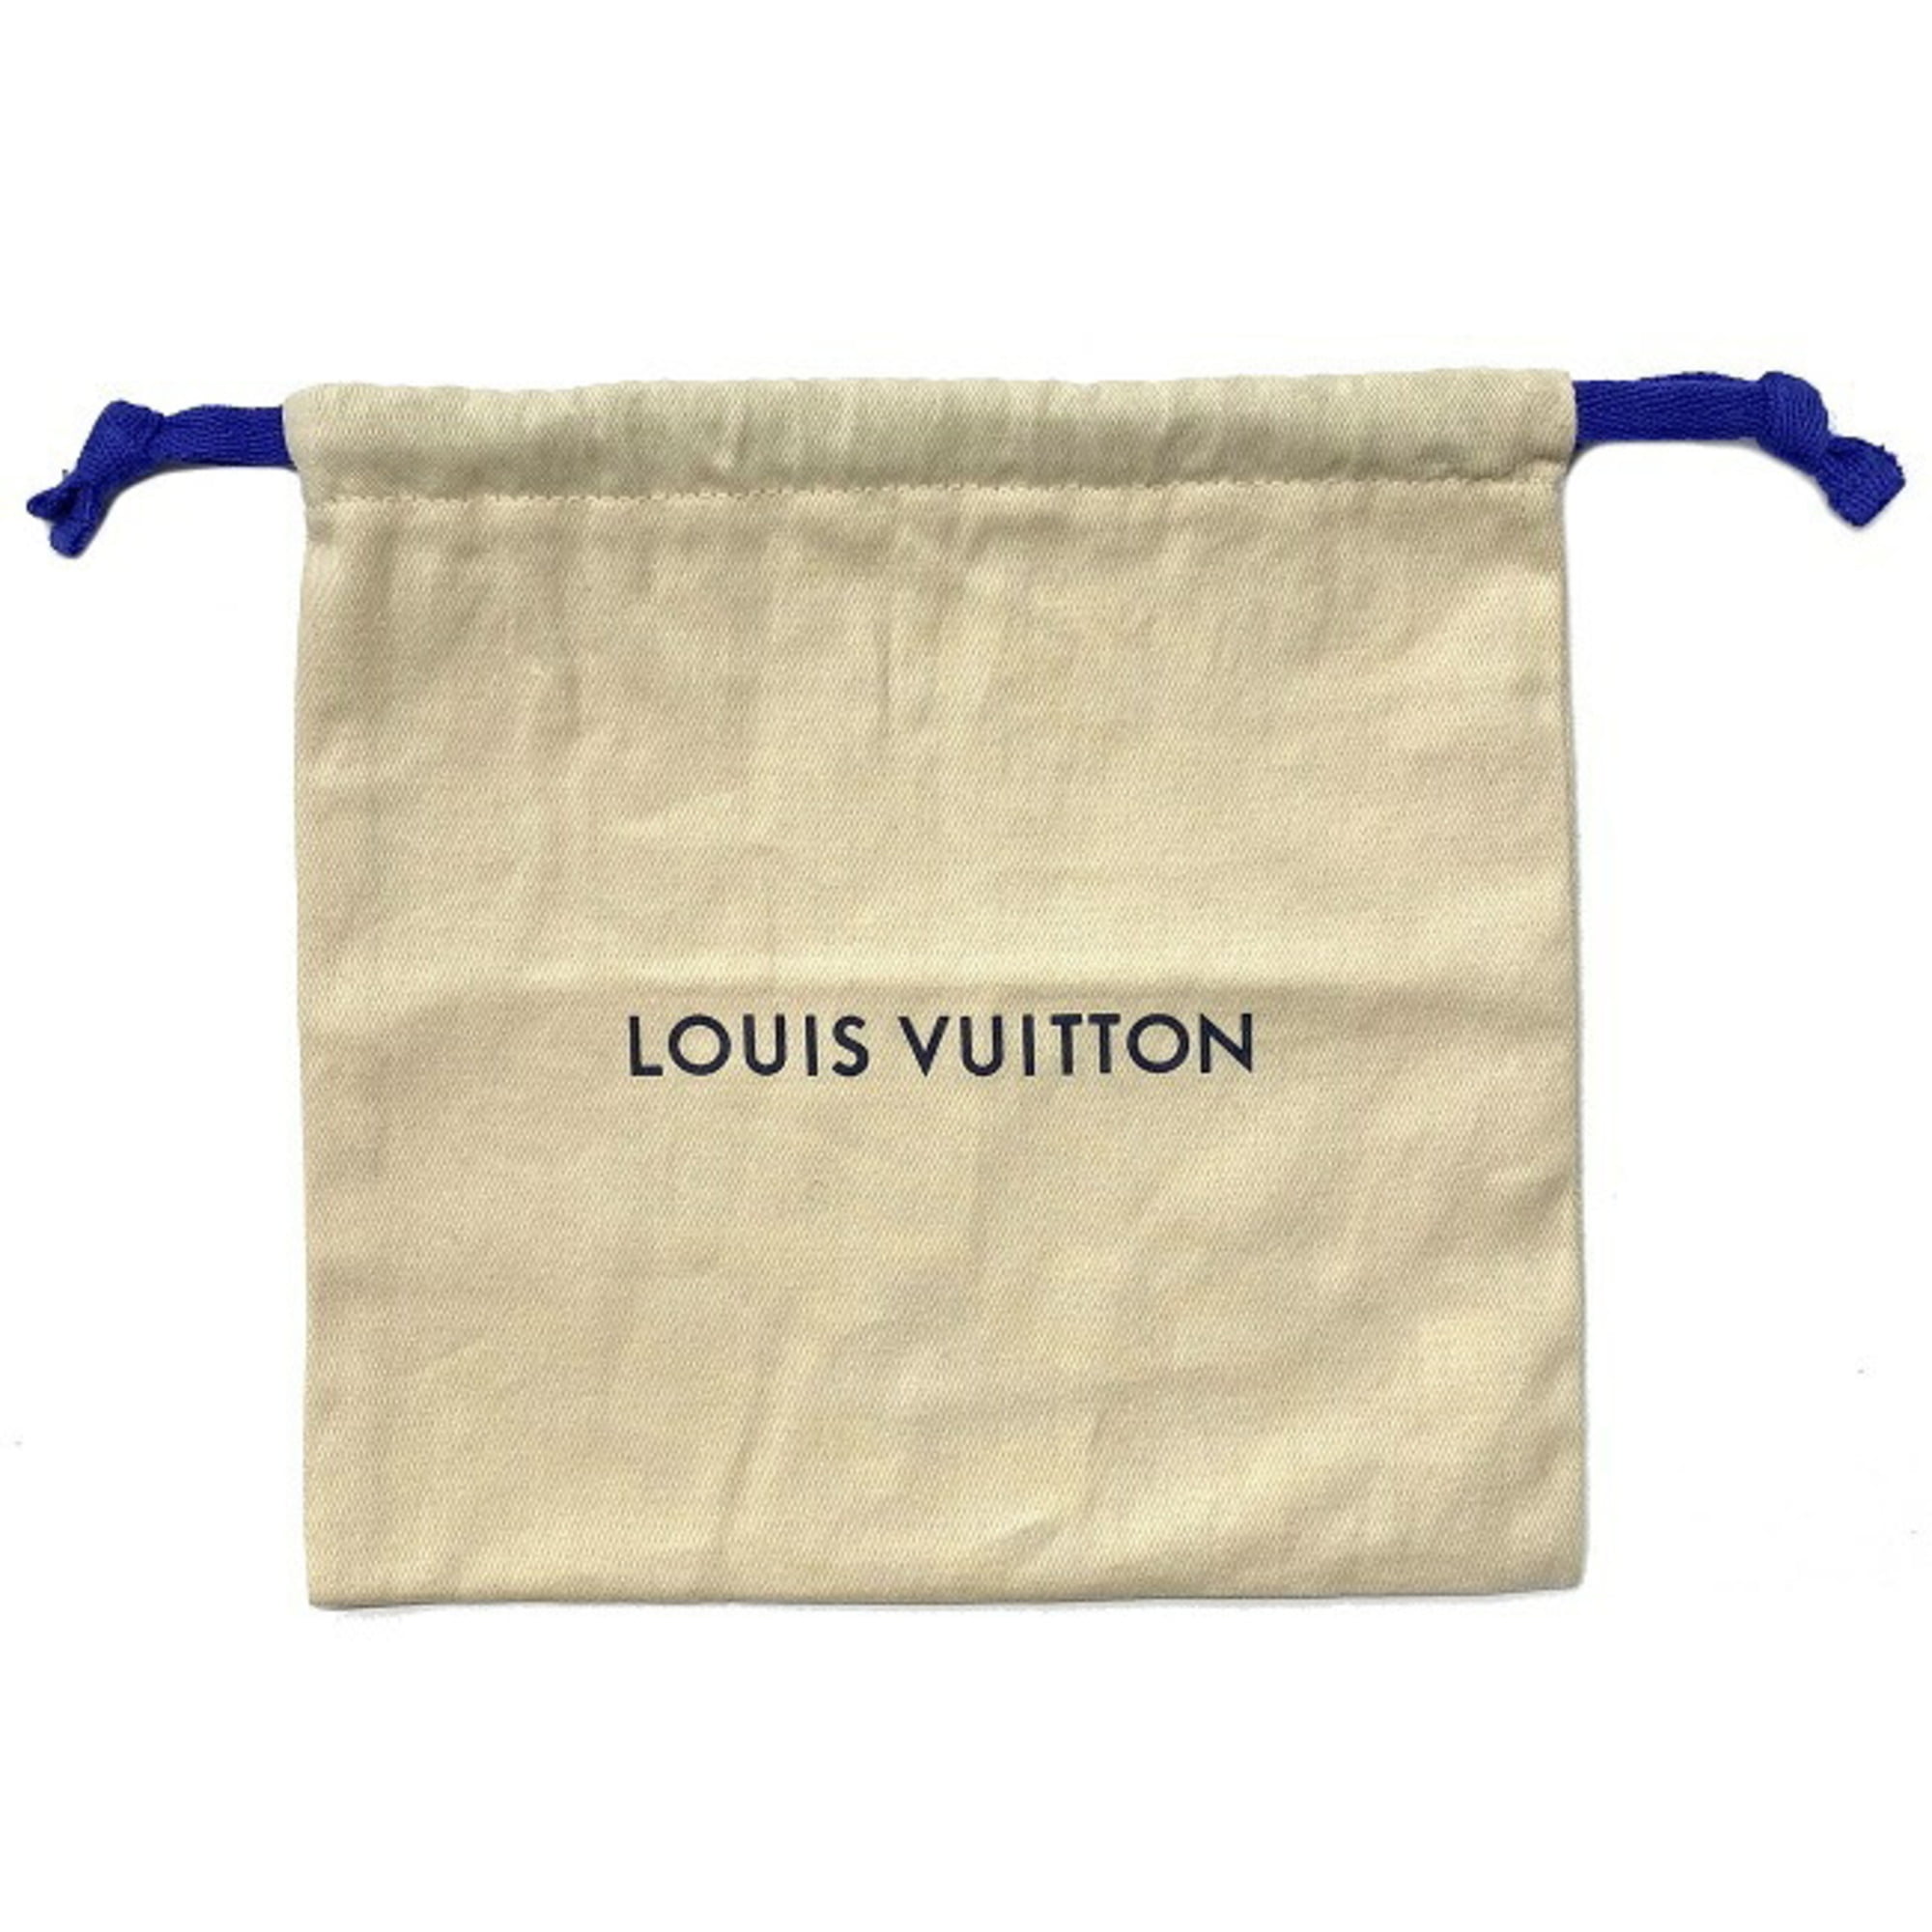 Louis Vuitton, a red Damier Infini 'Detroit' belt, size 100, 2013